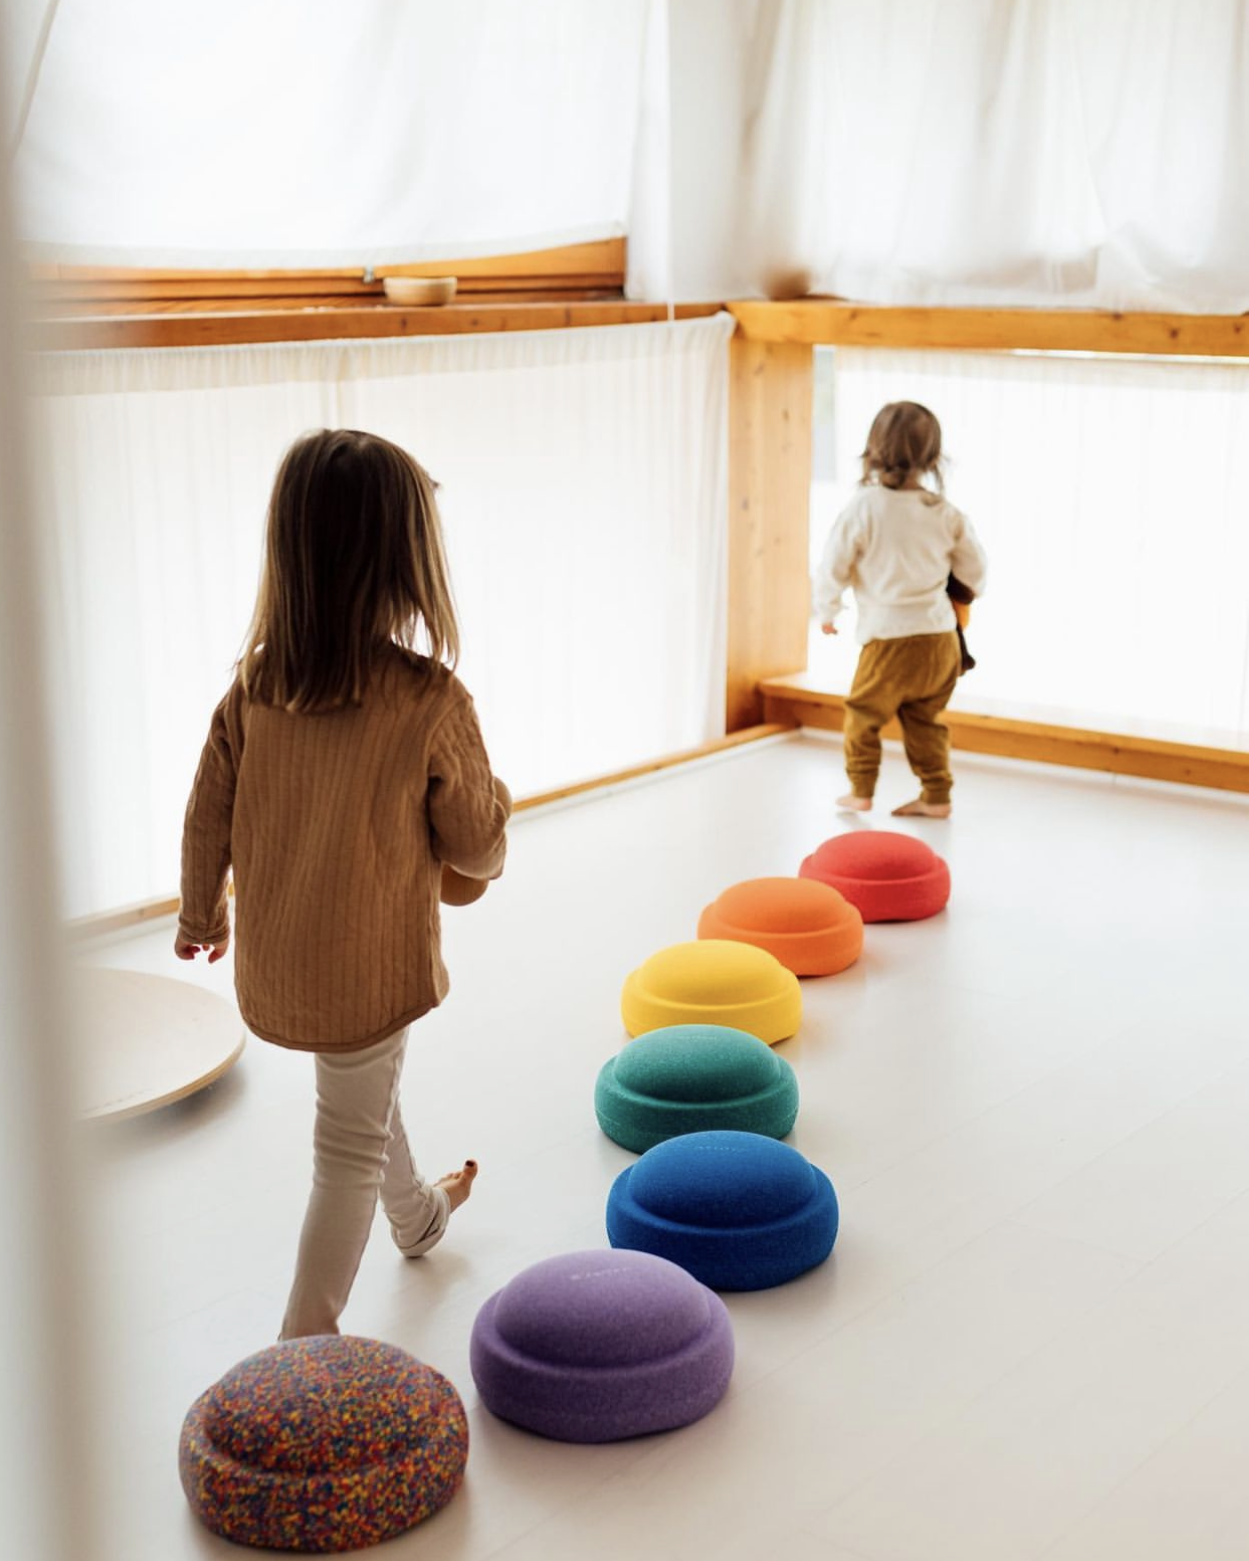 ins同款彩虹过河石儿童感统训练器材幼儿园体育教具家用平衡玩具